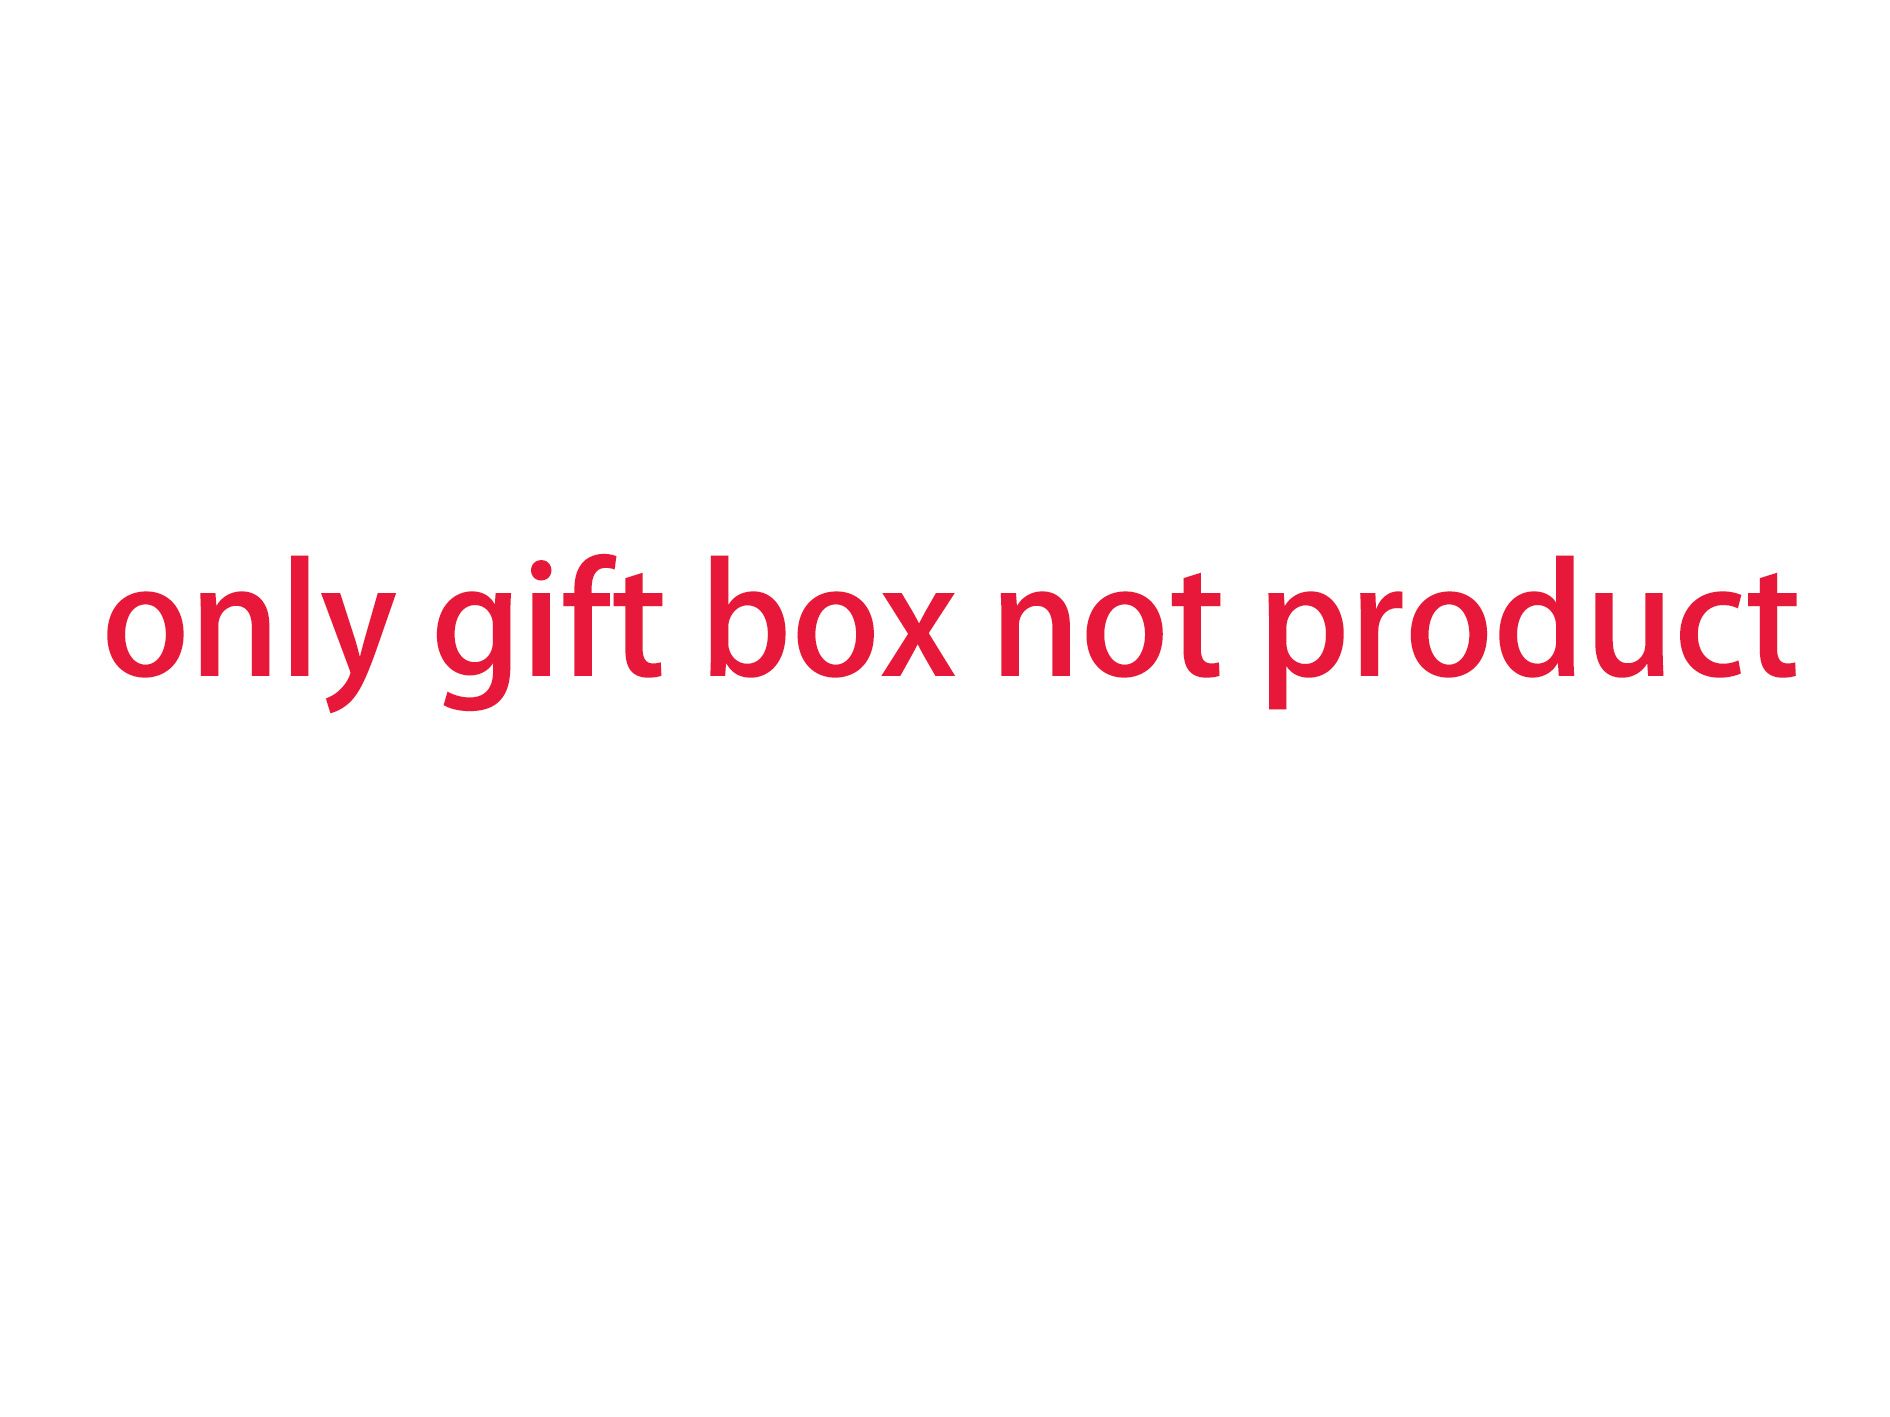 taxa extra de embalagem de caixa de presente